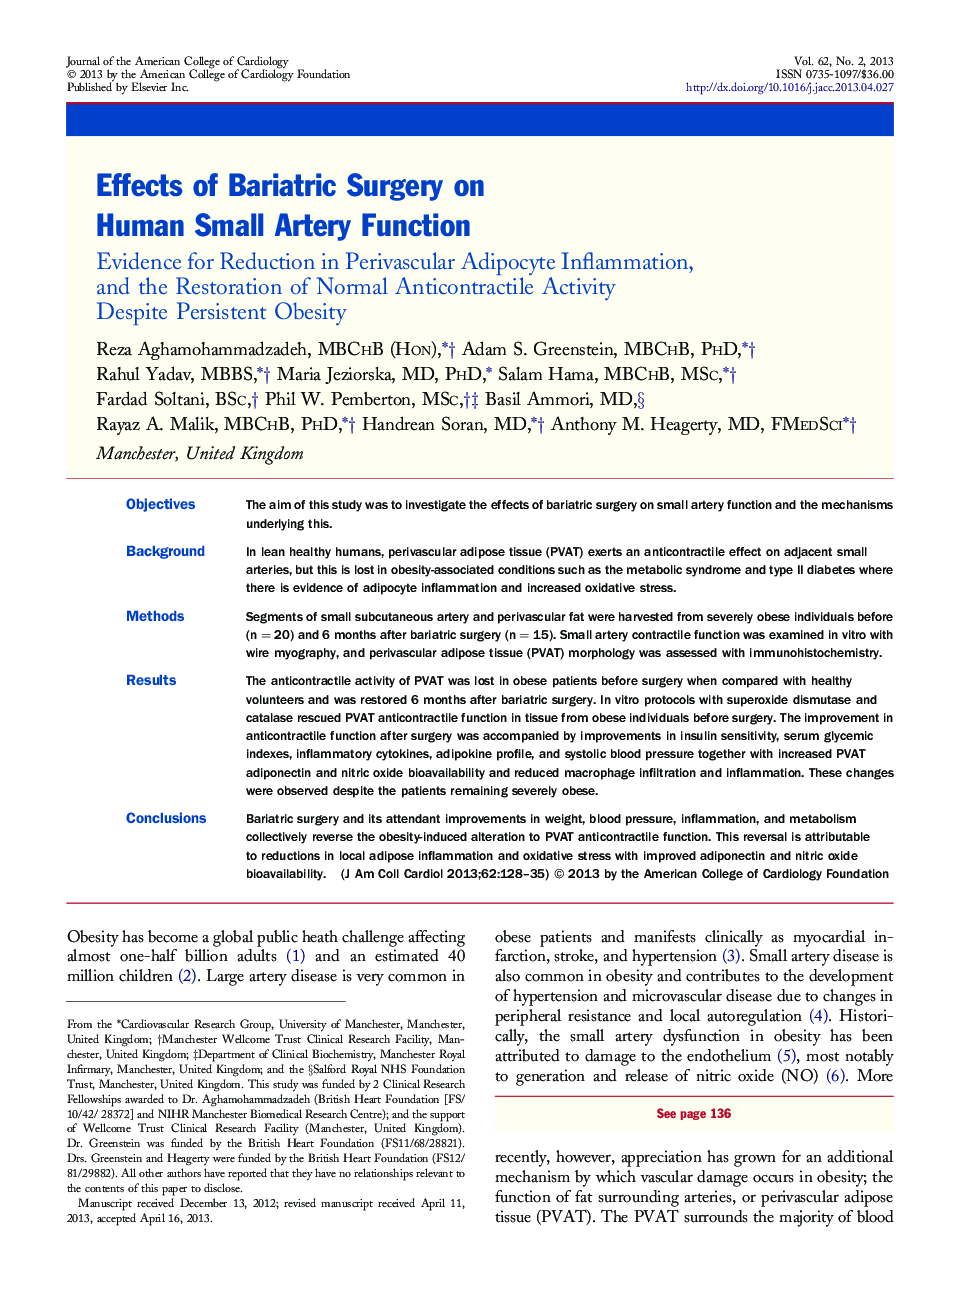 اثرات جراحی بریتریک بر عملکرد عروق کوچک انسانی: شواهد برای کاهش التهاب آدیفوسیت پریواسکولار و بازسازی فعالیت ضد انقباض طبیعی با وجود یک چاقی پایدار 